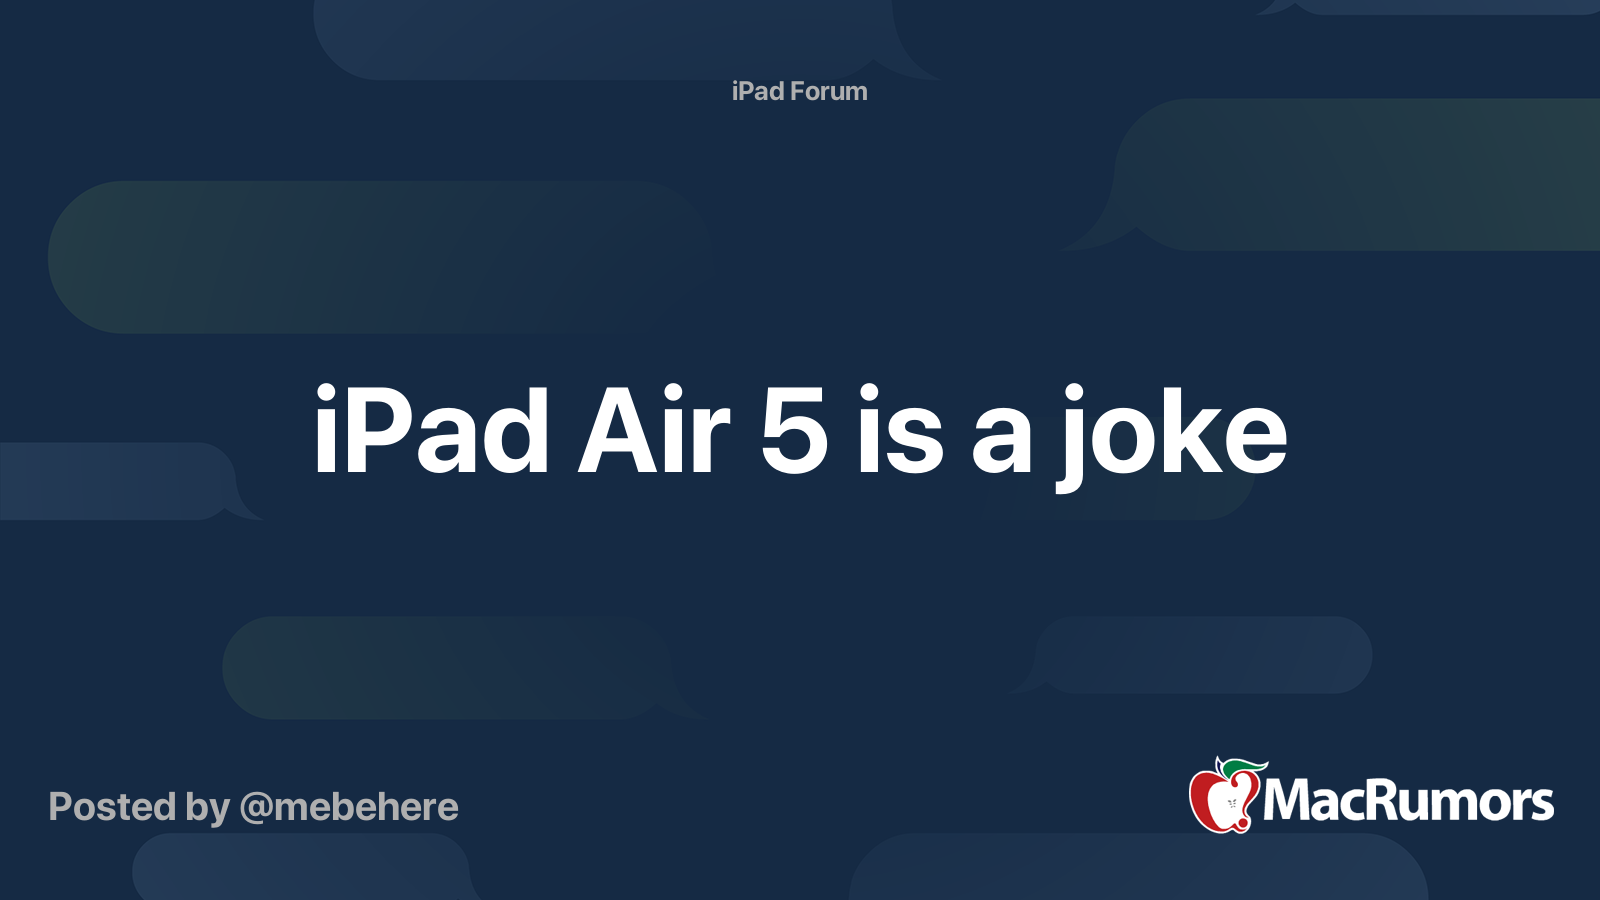 jokes about ipad